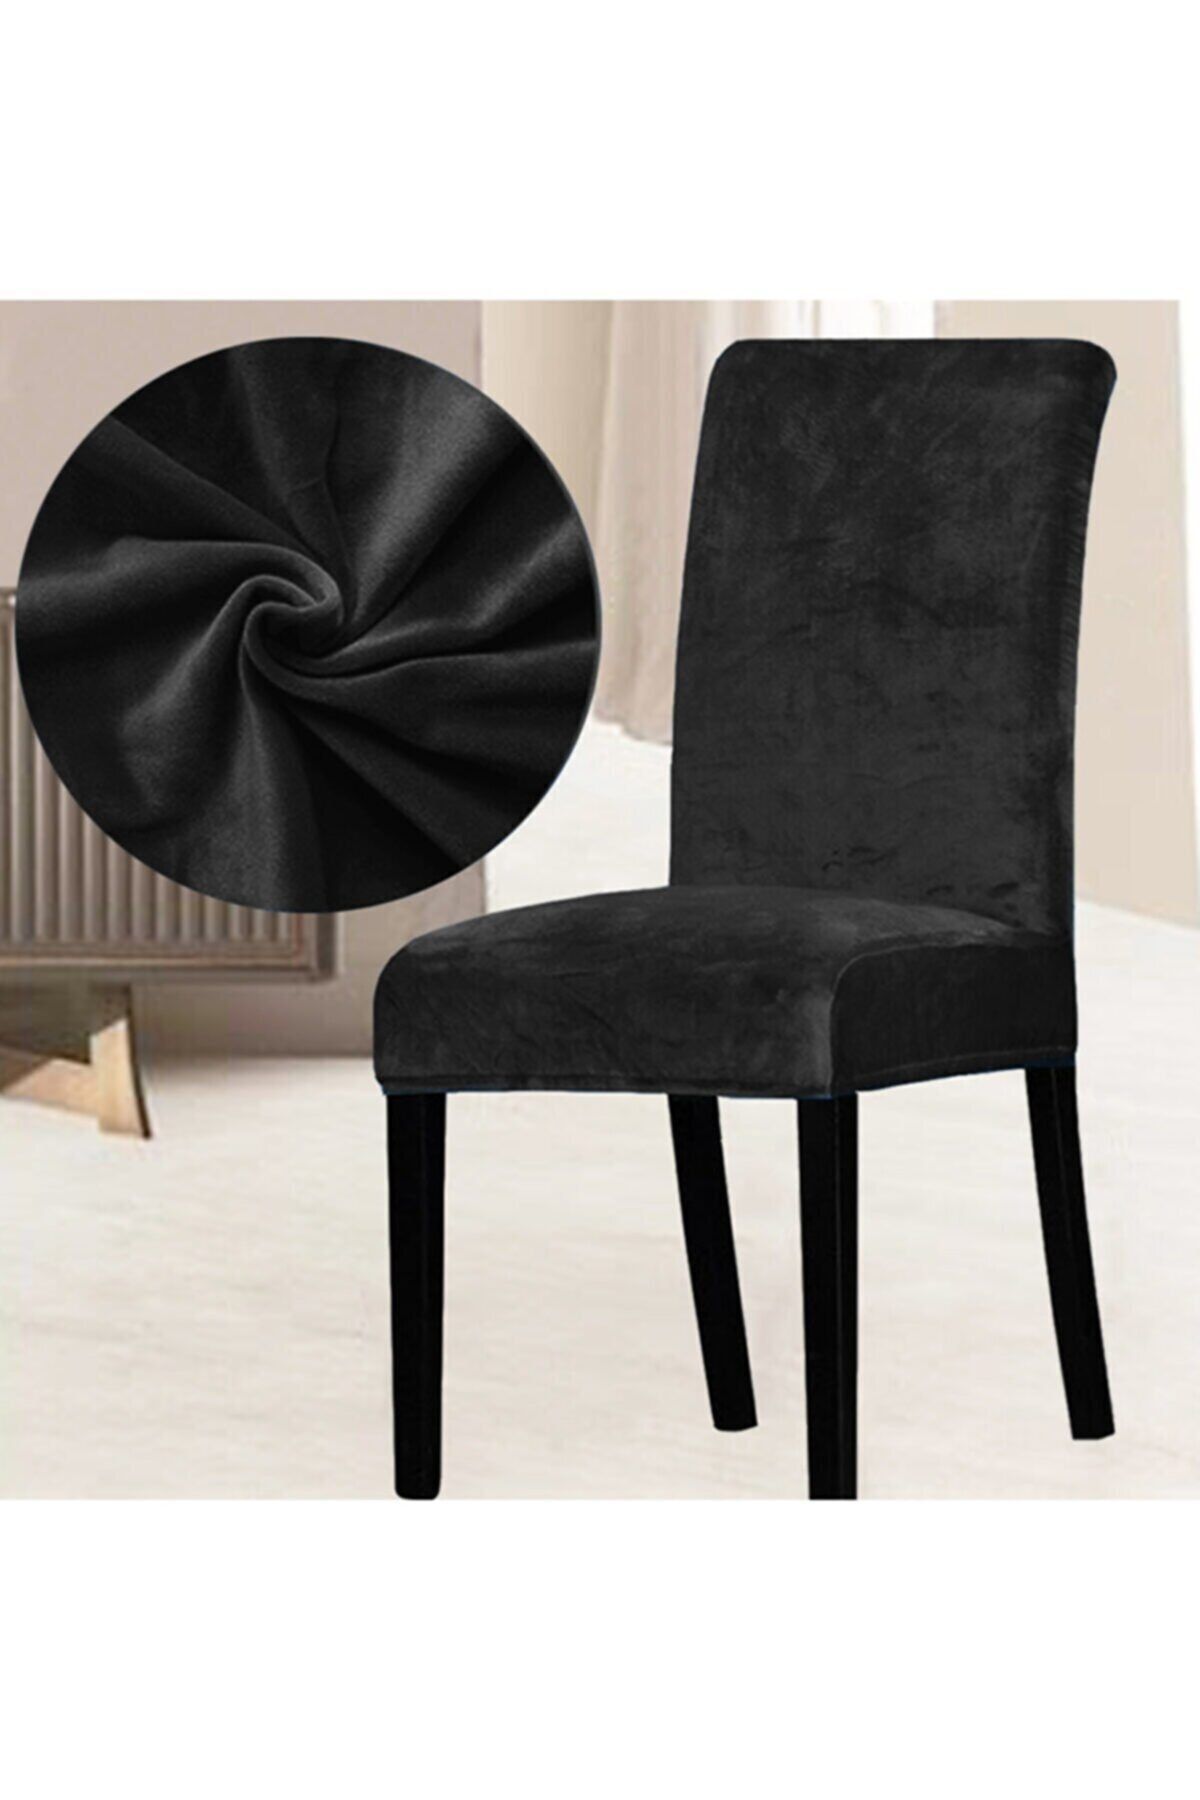 elgeyar Ipek Kadife Sandalye Kılıfı,sandalye Örtüsü, Lastıkli, Standart 1 Adet Siyah Renk